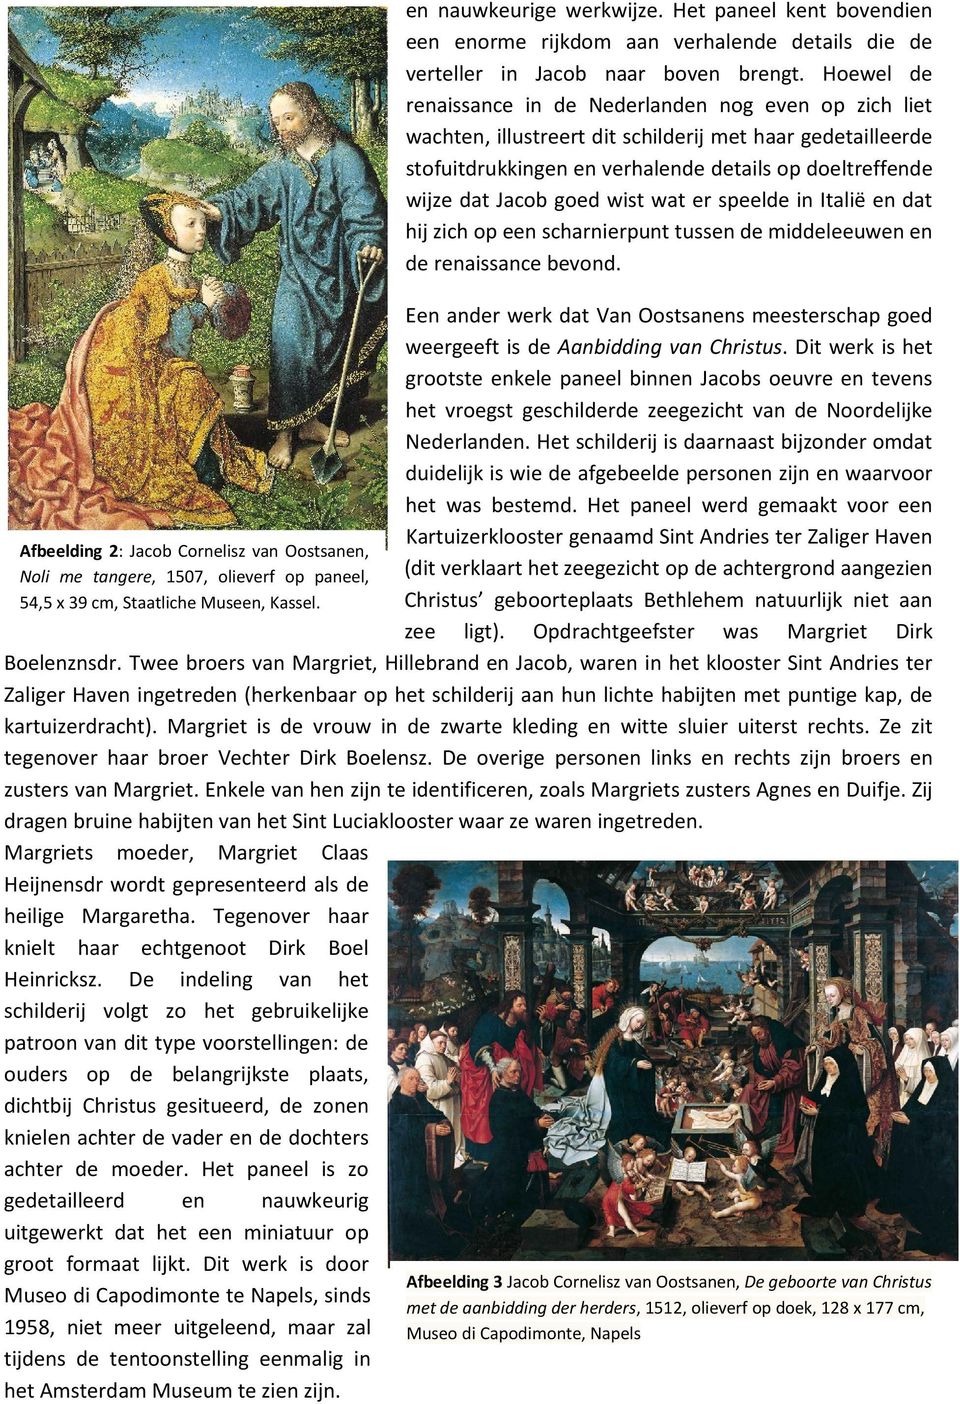 Hoewel de renaissance in de Nederlanden nog even op zich liet wachten, illustreert dit schilderij met haar gedetailleerde stofuitdrukkingen en verhalende details op doeltreffende wijze dat Jacob goed